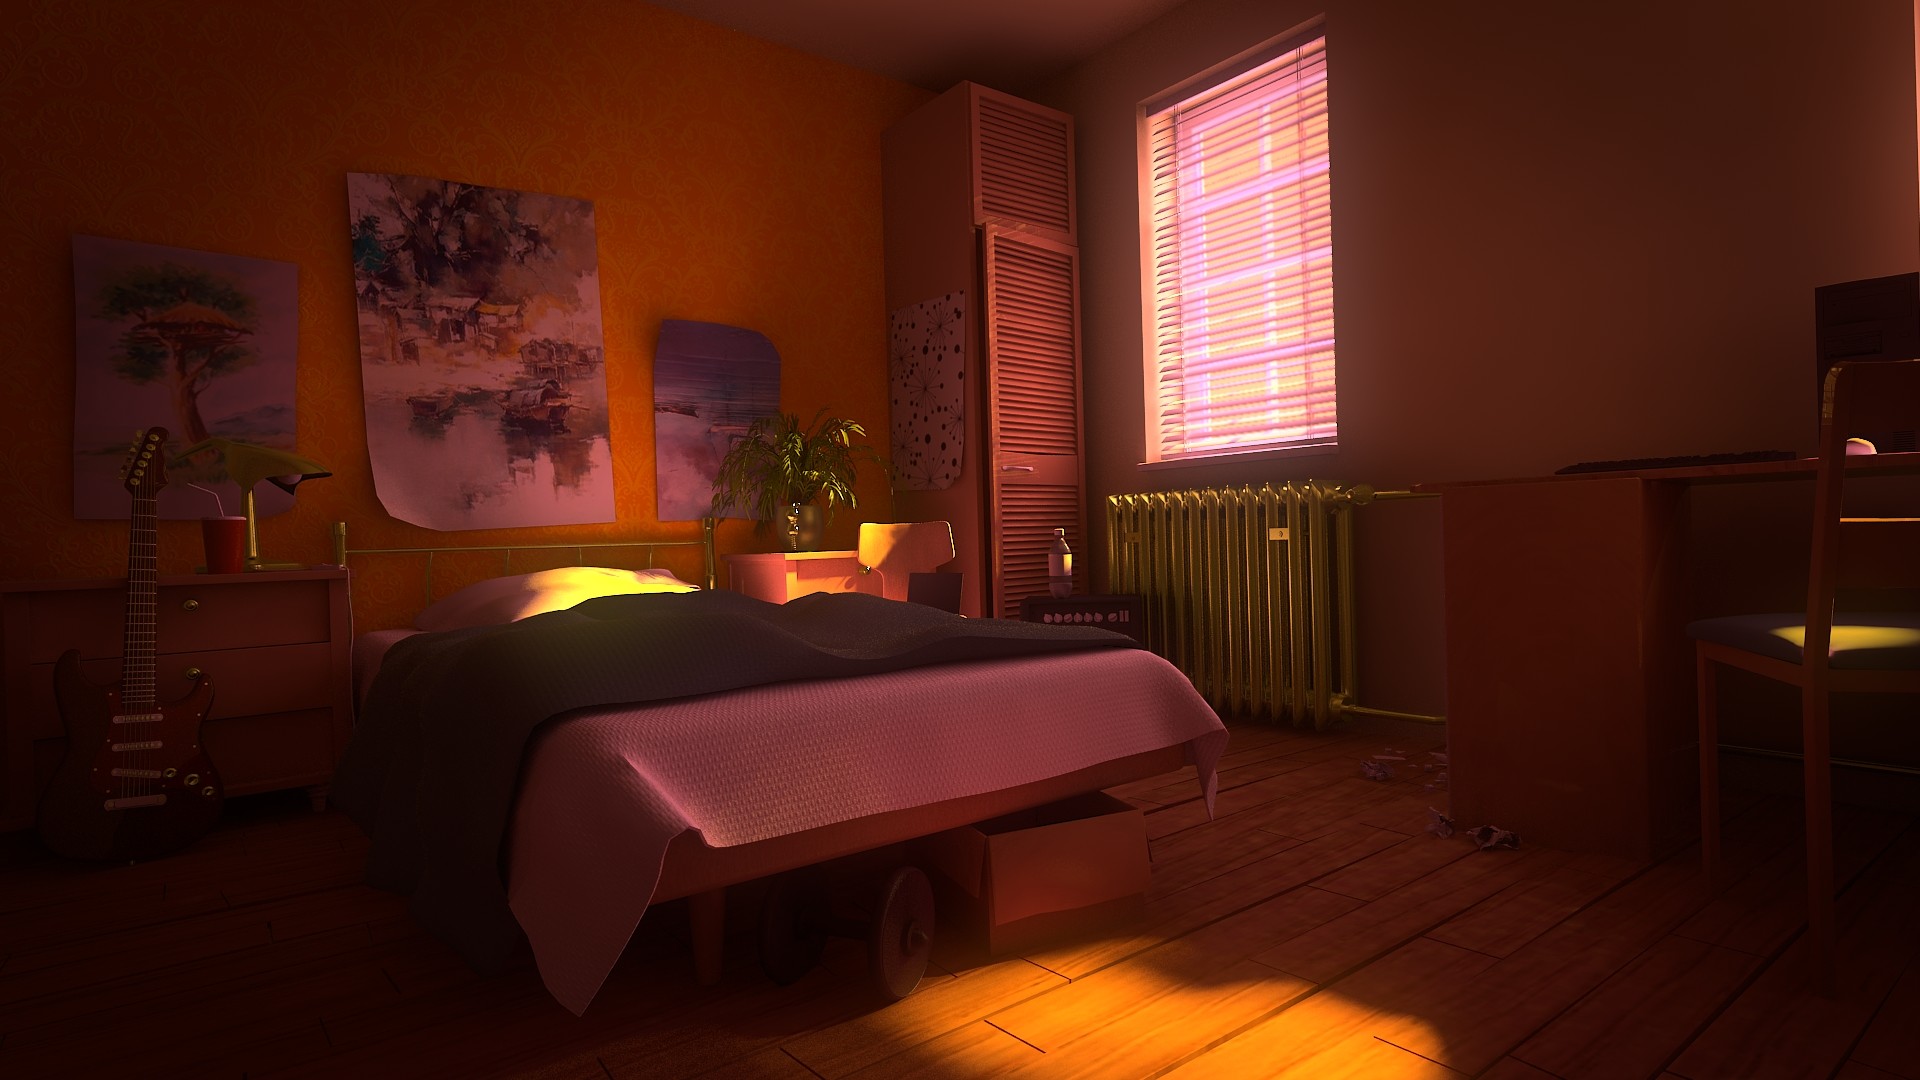 ArtStation - Bed room